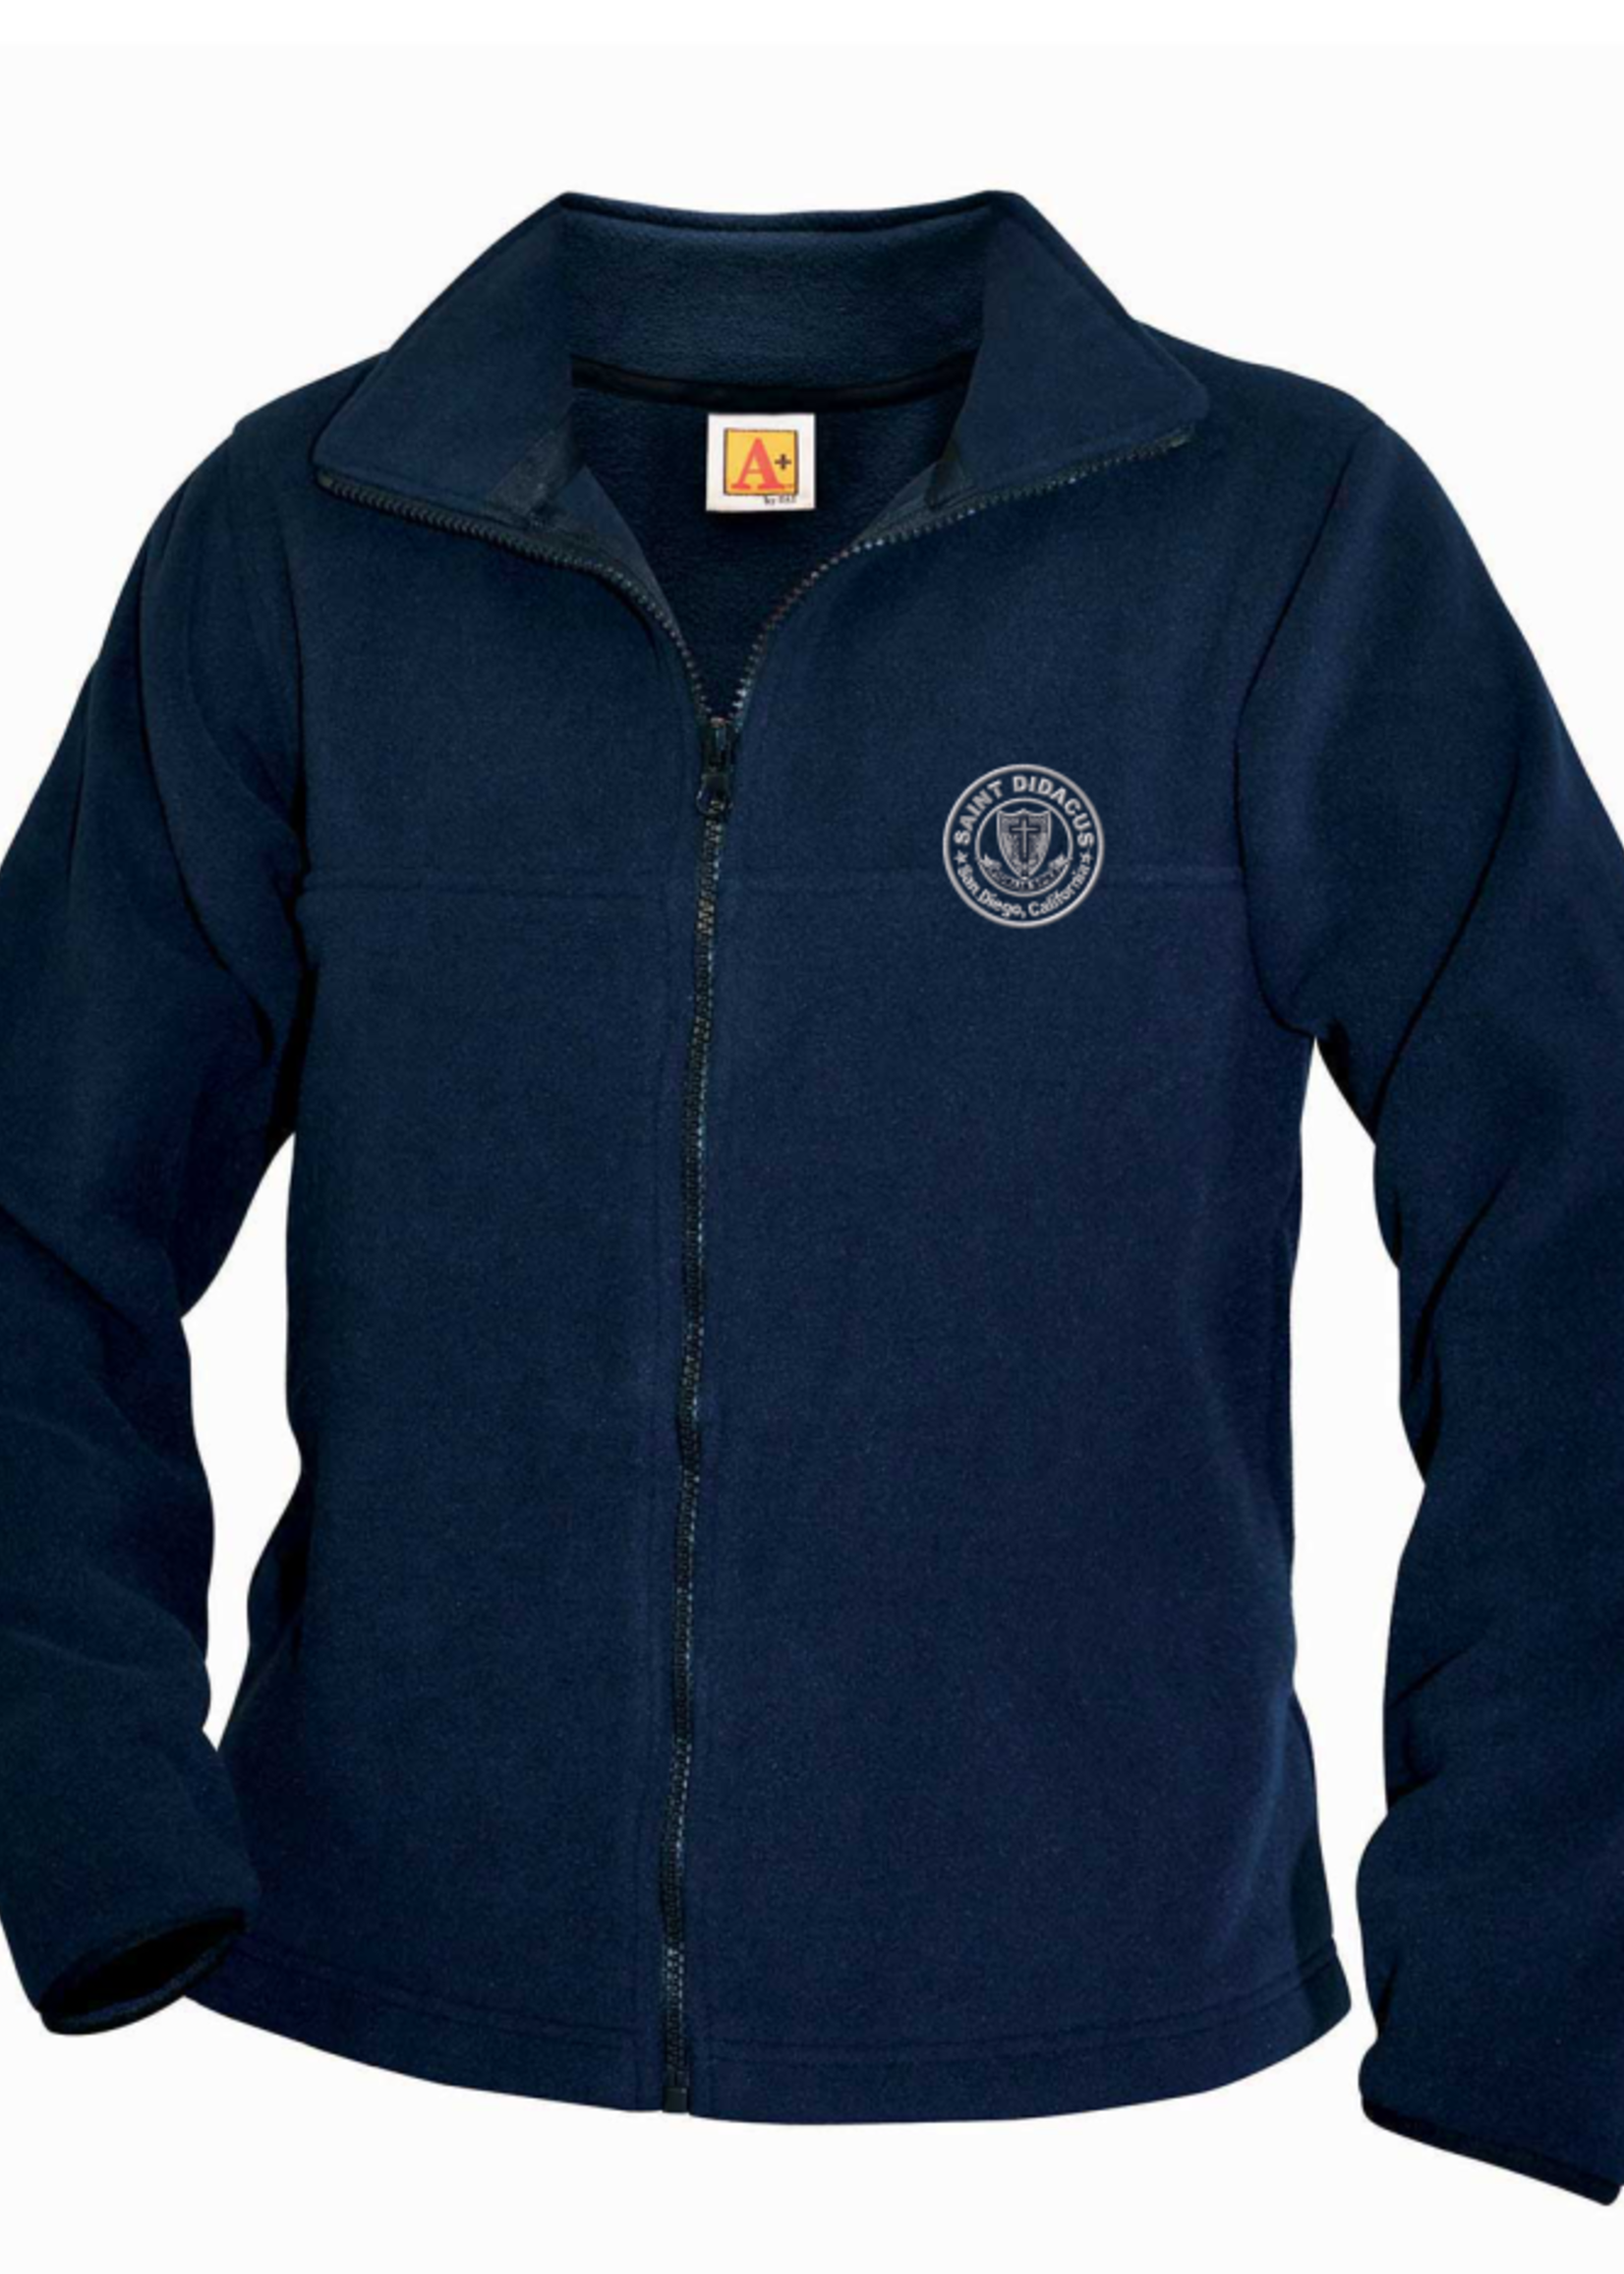 SDPS Navy Fleece Full Zip Jacket